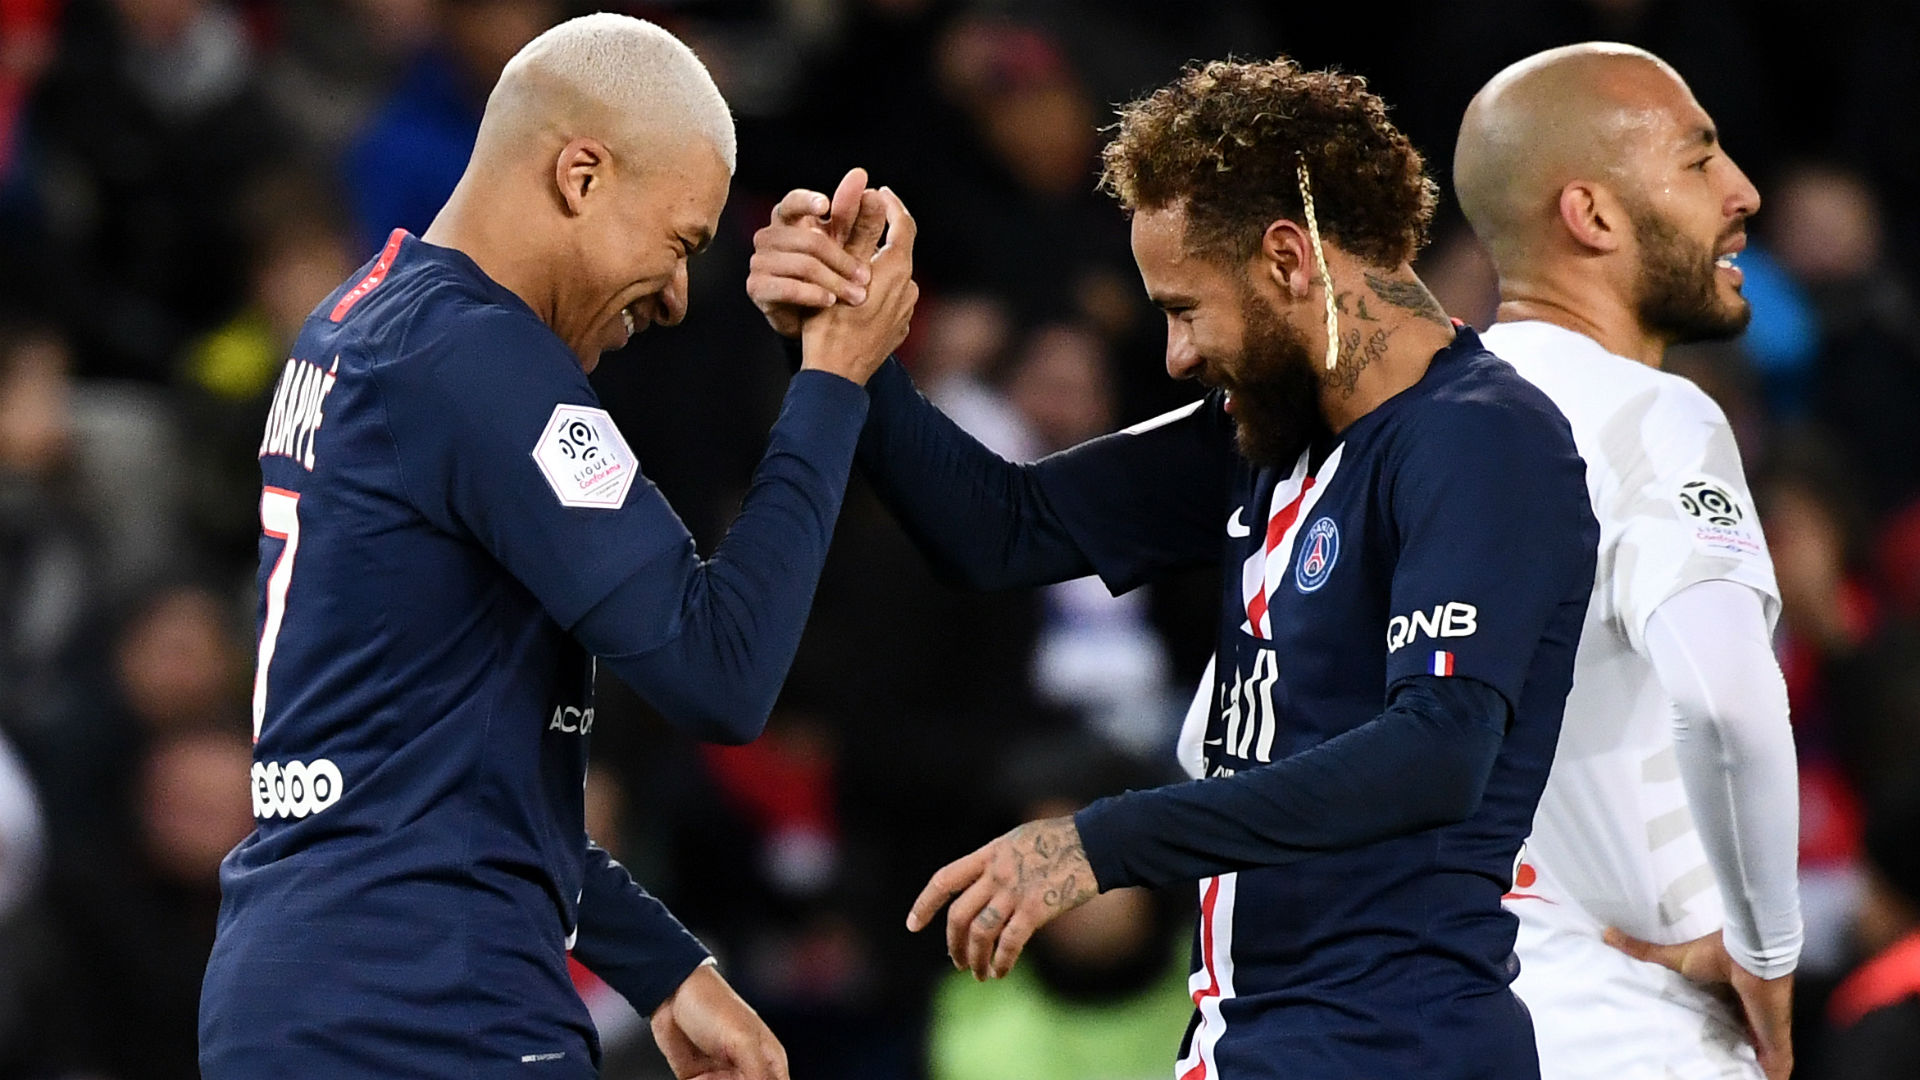 Paris Saint-Germain 4-1 Amiens: Mbappe, Neymar and Icardi devastate struggling visitors